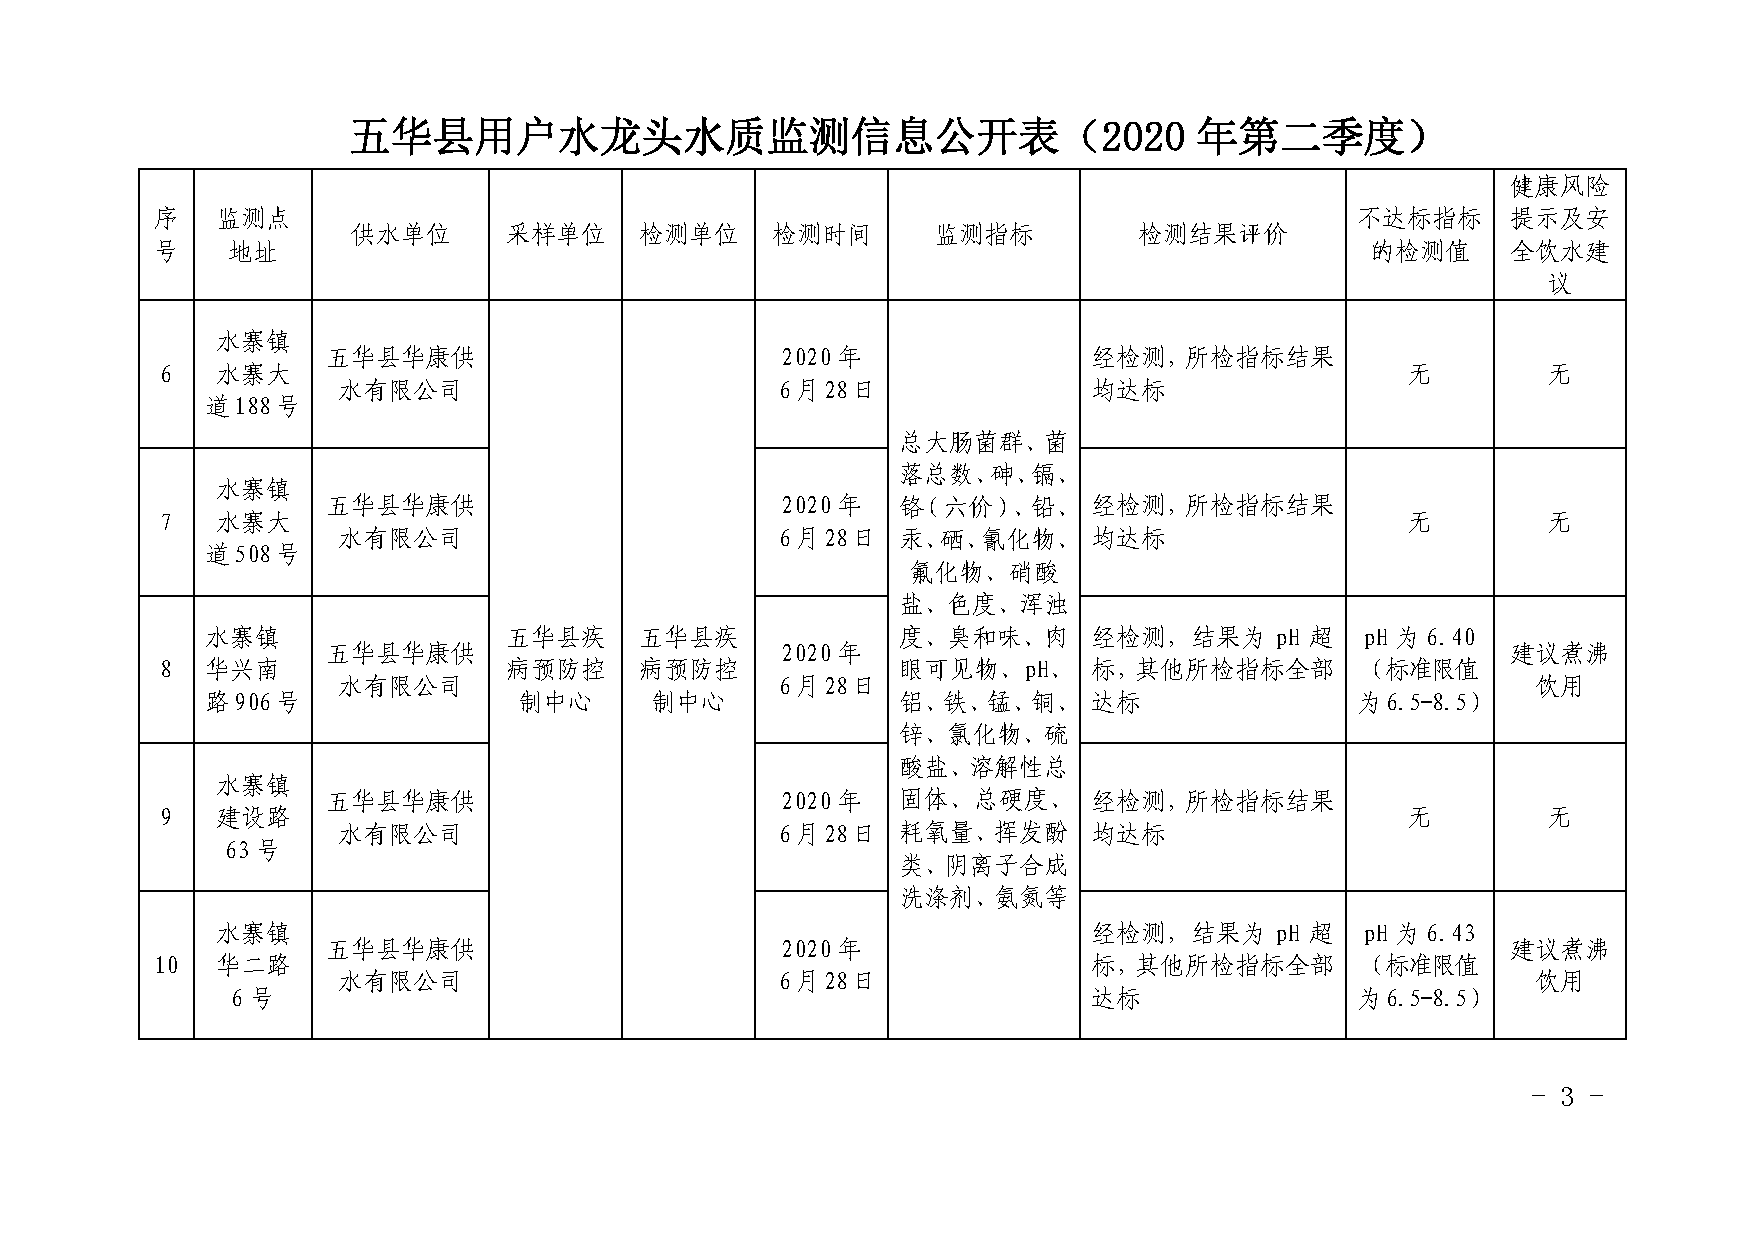 关于五华县2020年第二季度用户水龙头水质监测结果的报告_页面_3.png